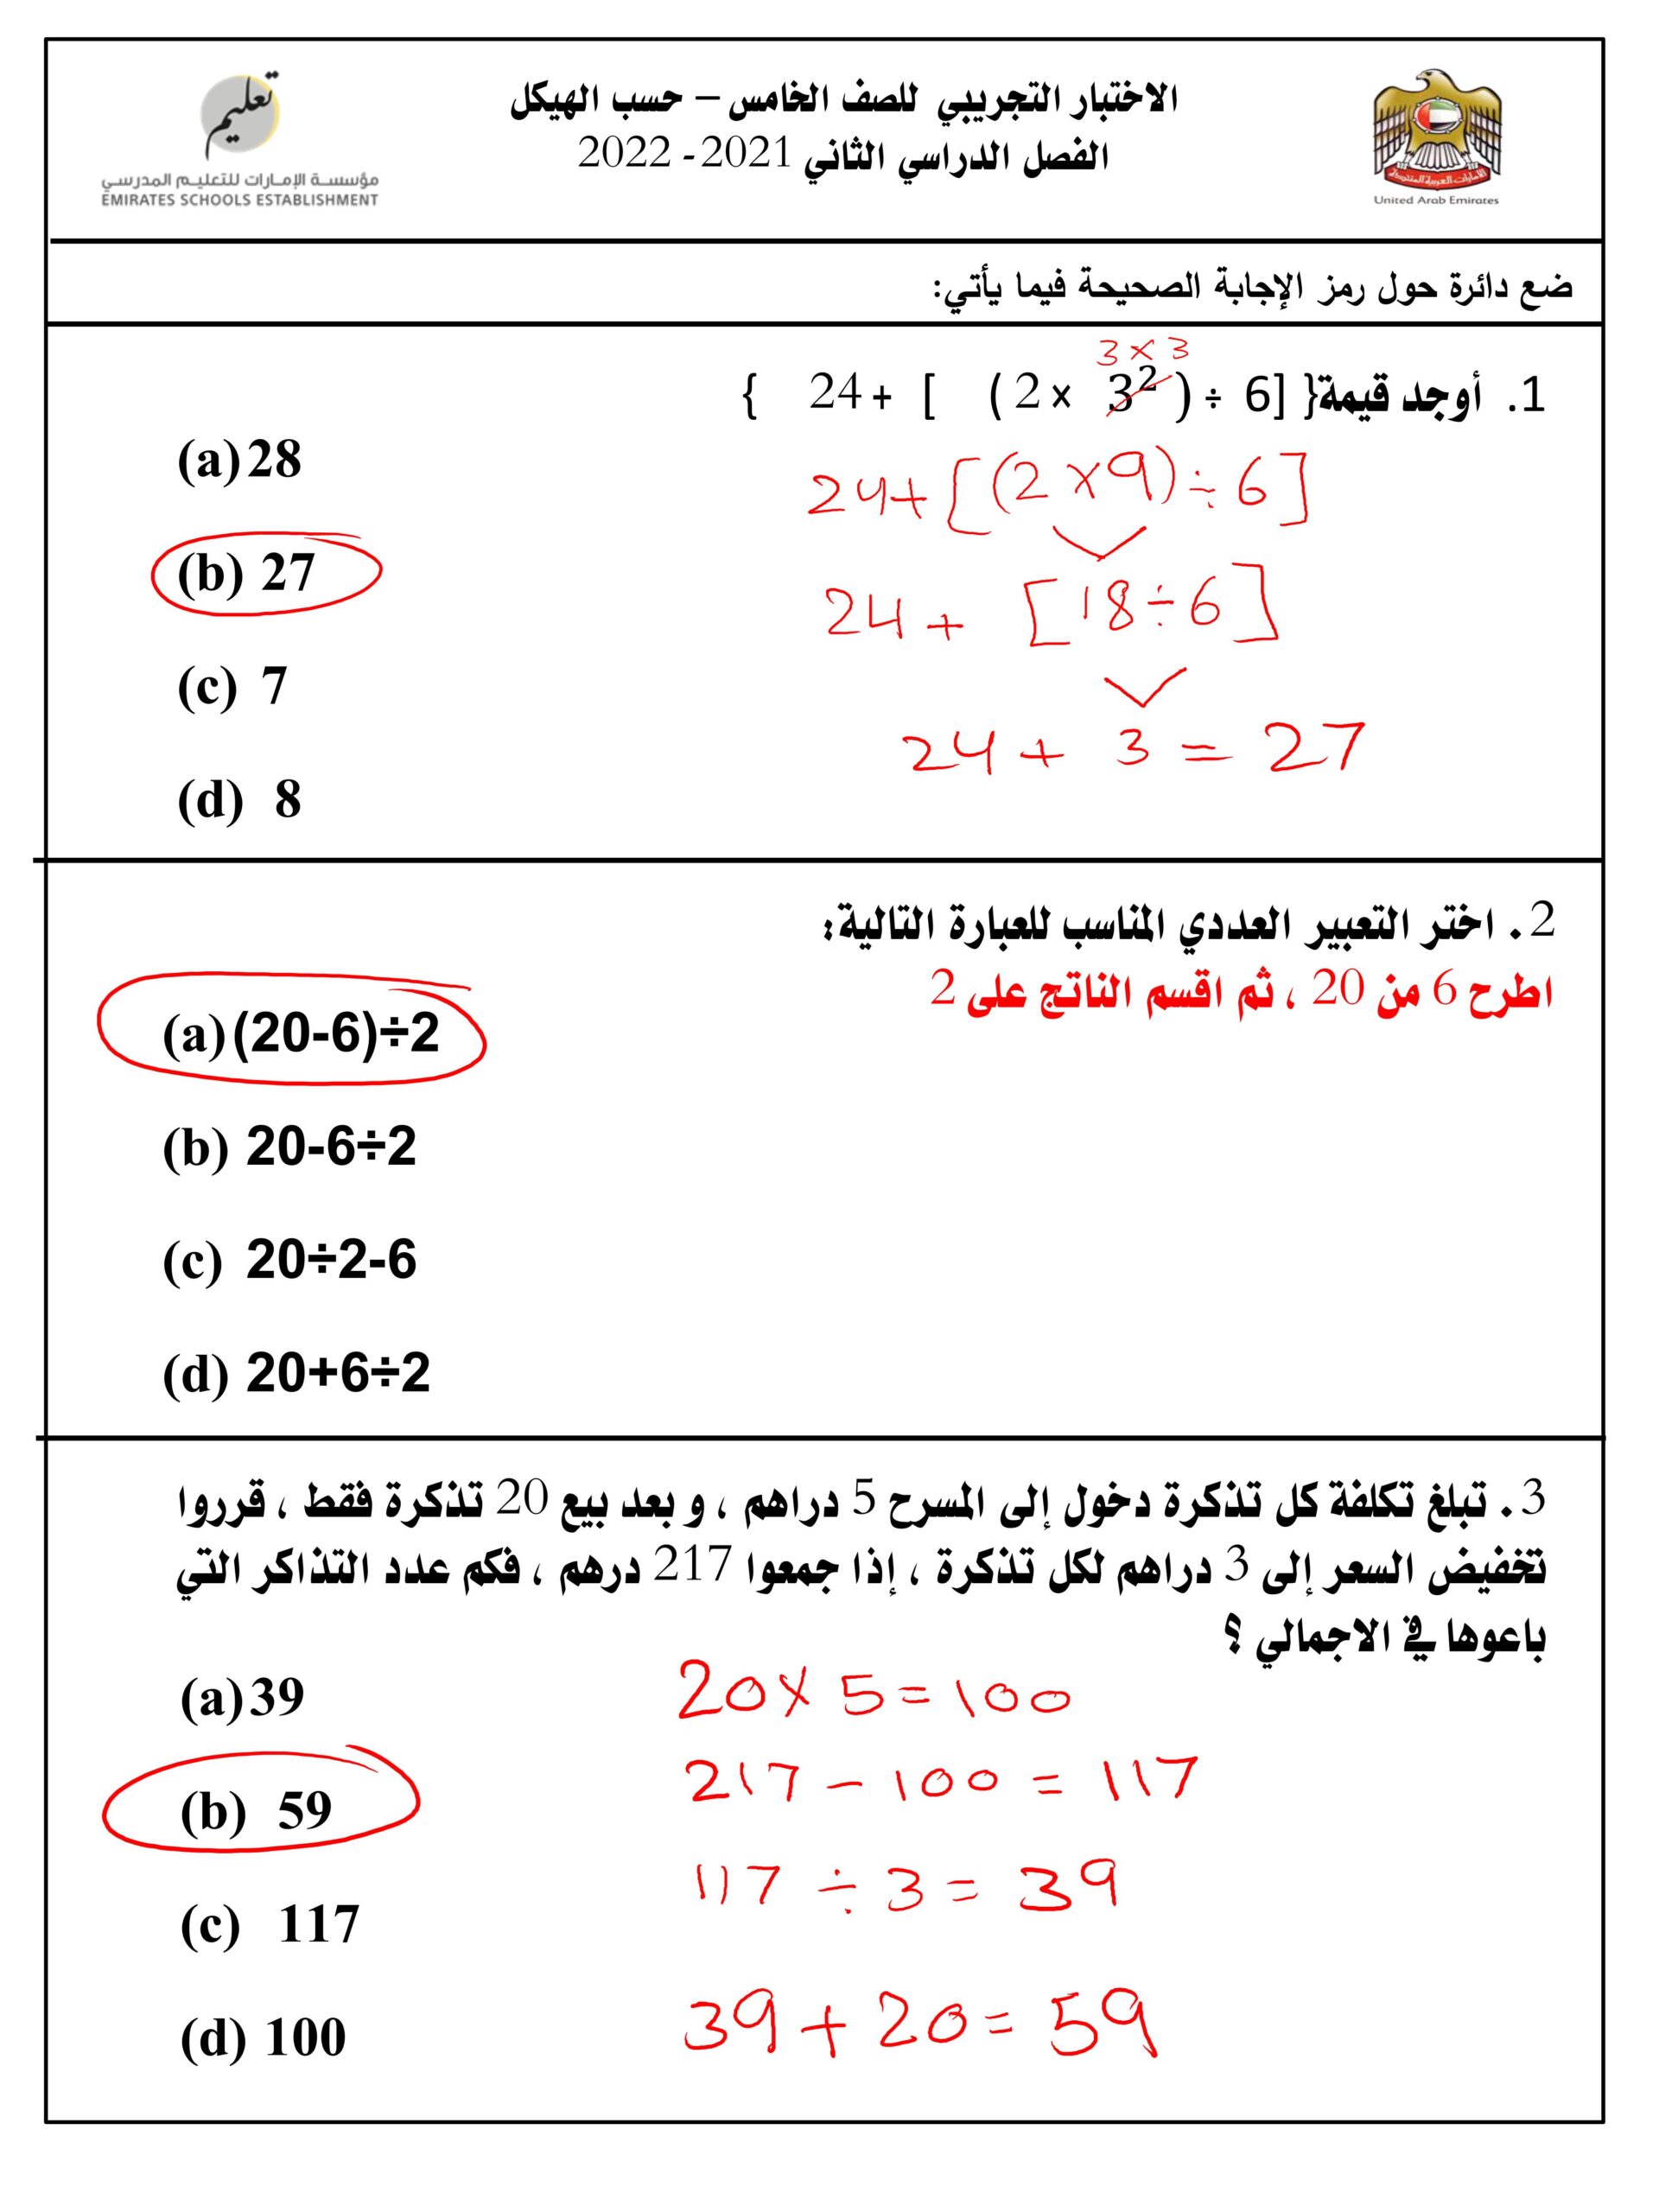 حل الاختبار التجريبي حسب الهيكل الرياضيات المتكاملة الصف الخامس